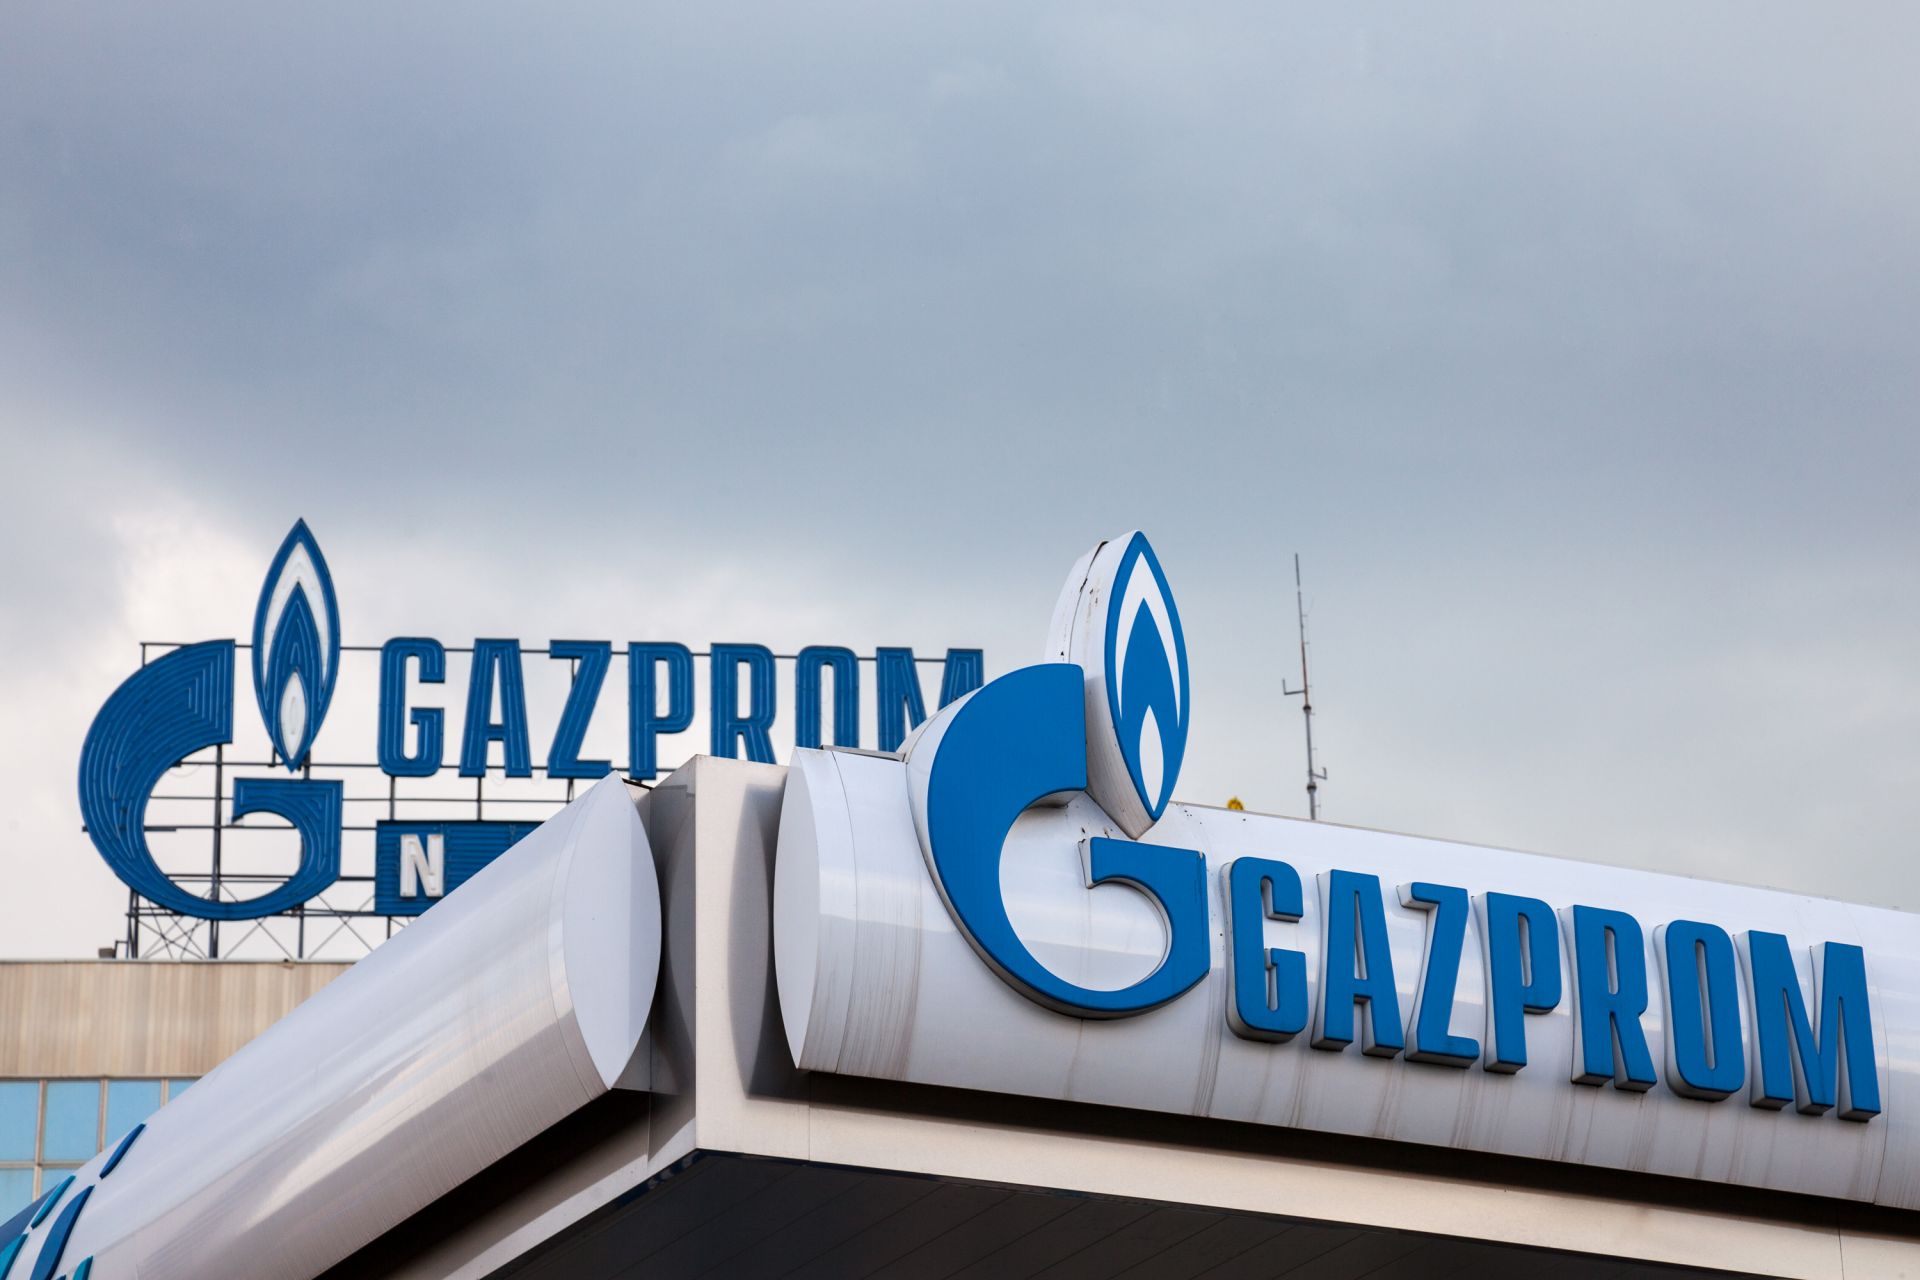 Като се отчита динамиката на цените на газа през миналата година, договорите на "Газпром" към настоящия момент отразяват пиковите европейски цени на газа през предишното четвърто тримесечие и първото такова на тази година